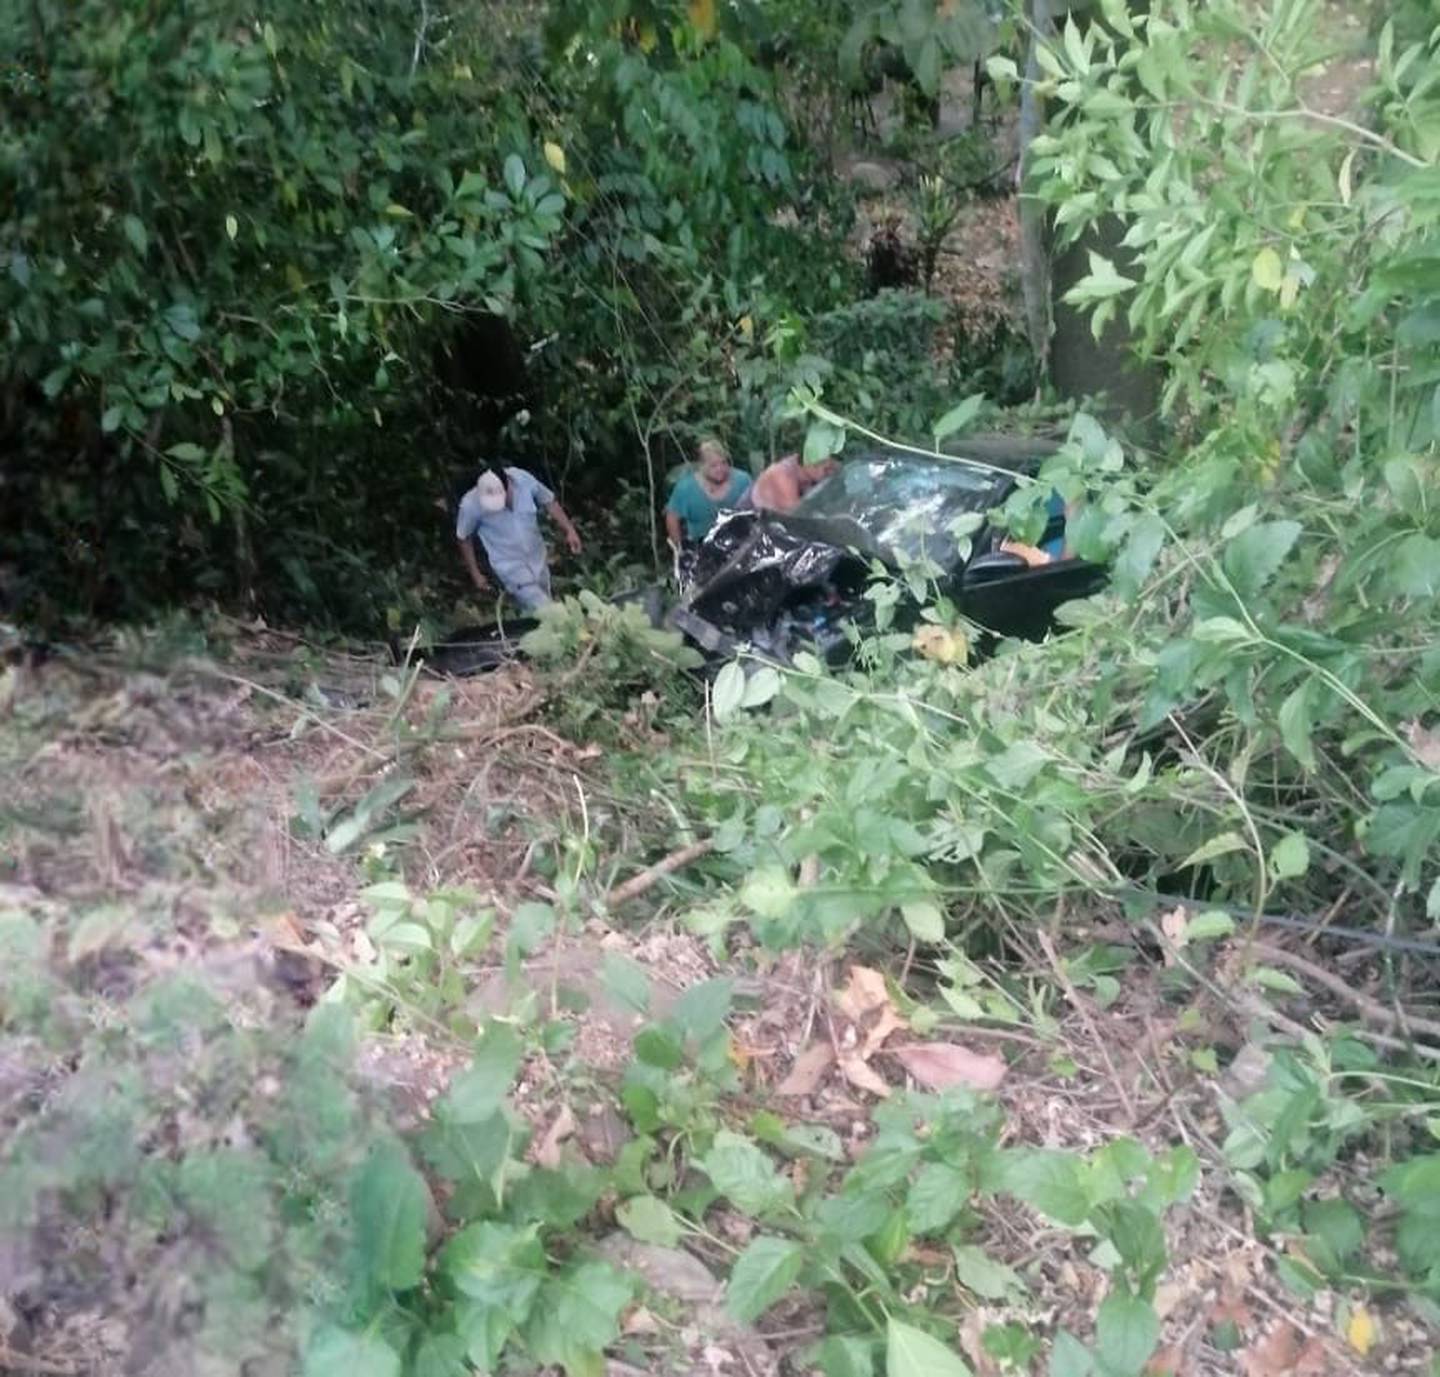 Los vecinos de la zona alertaron sobre la caída del vehículo a un guindo, donde las autoridades encontraron a la mujer fallecida.